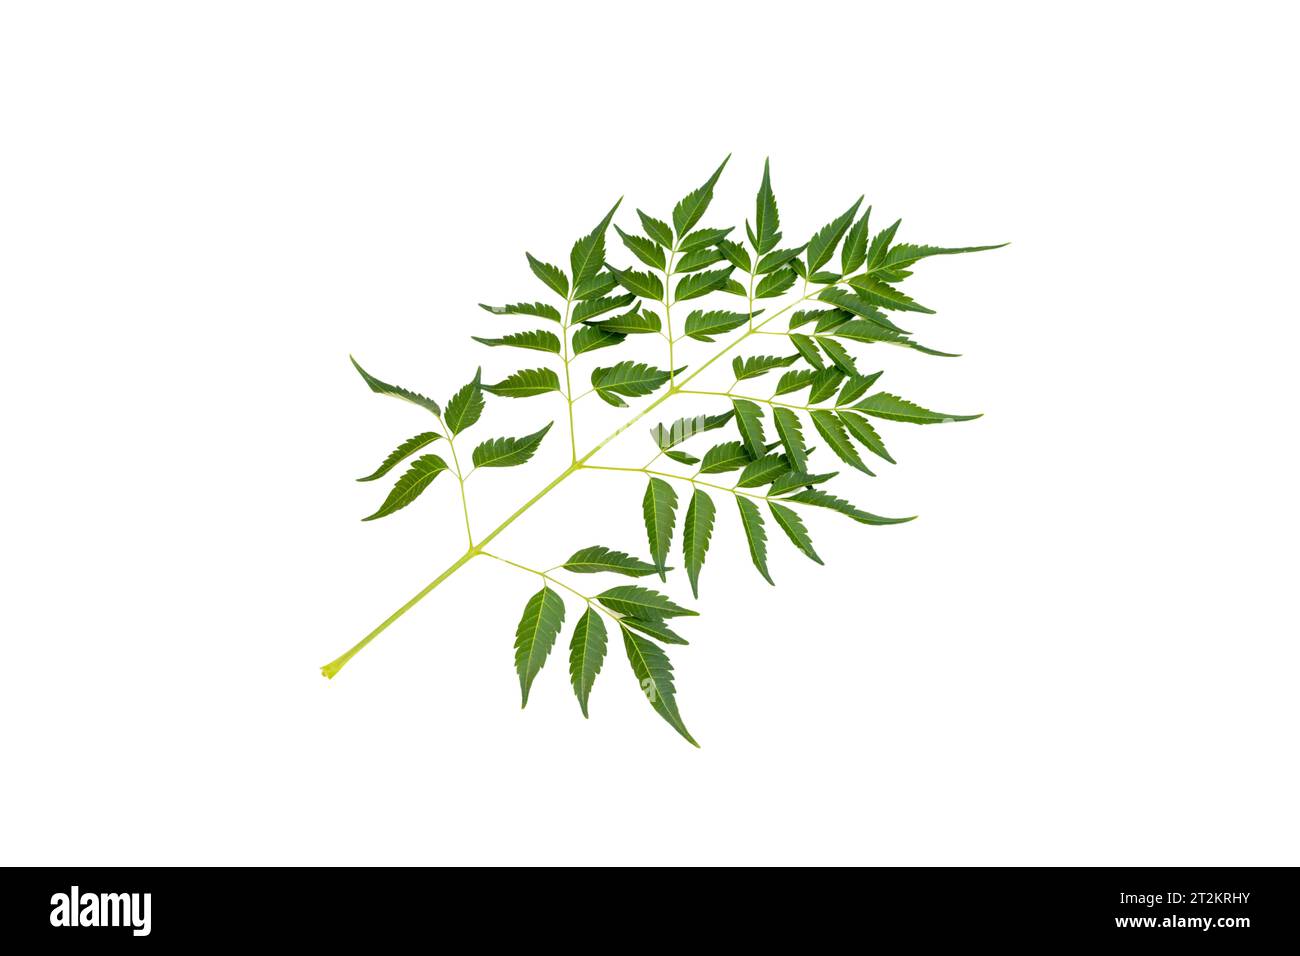 Melia azedarach chinaberry tree leaf isolated on white background Stock Photo